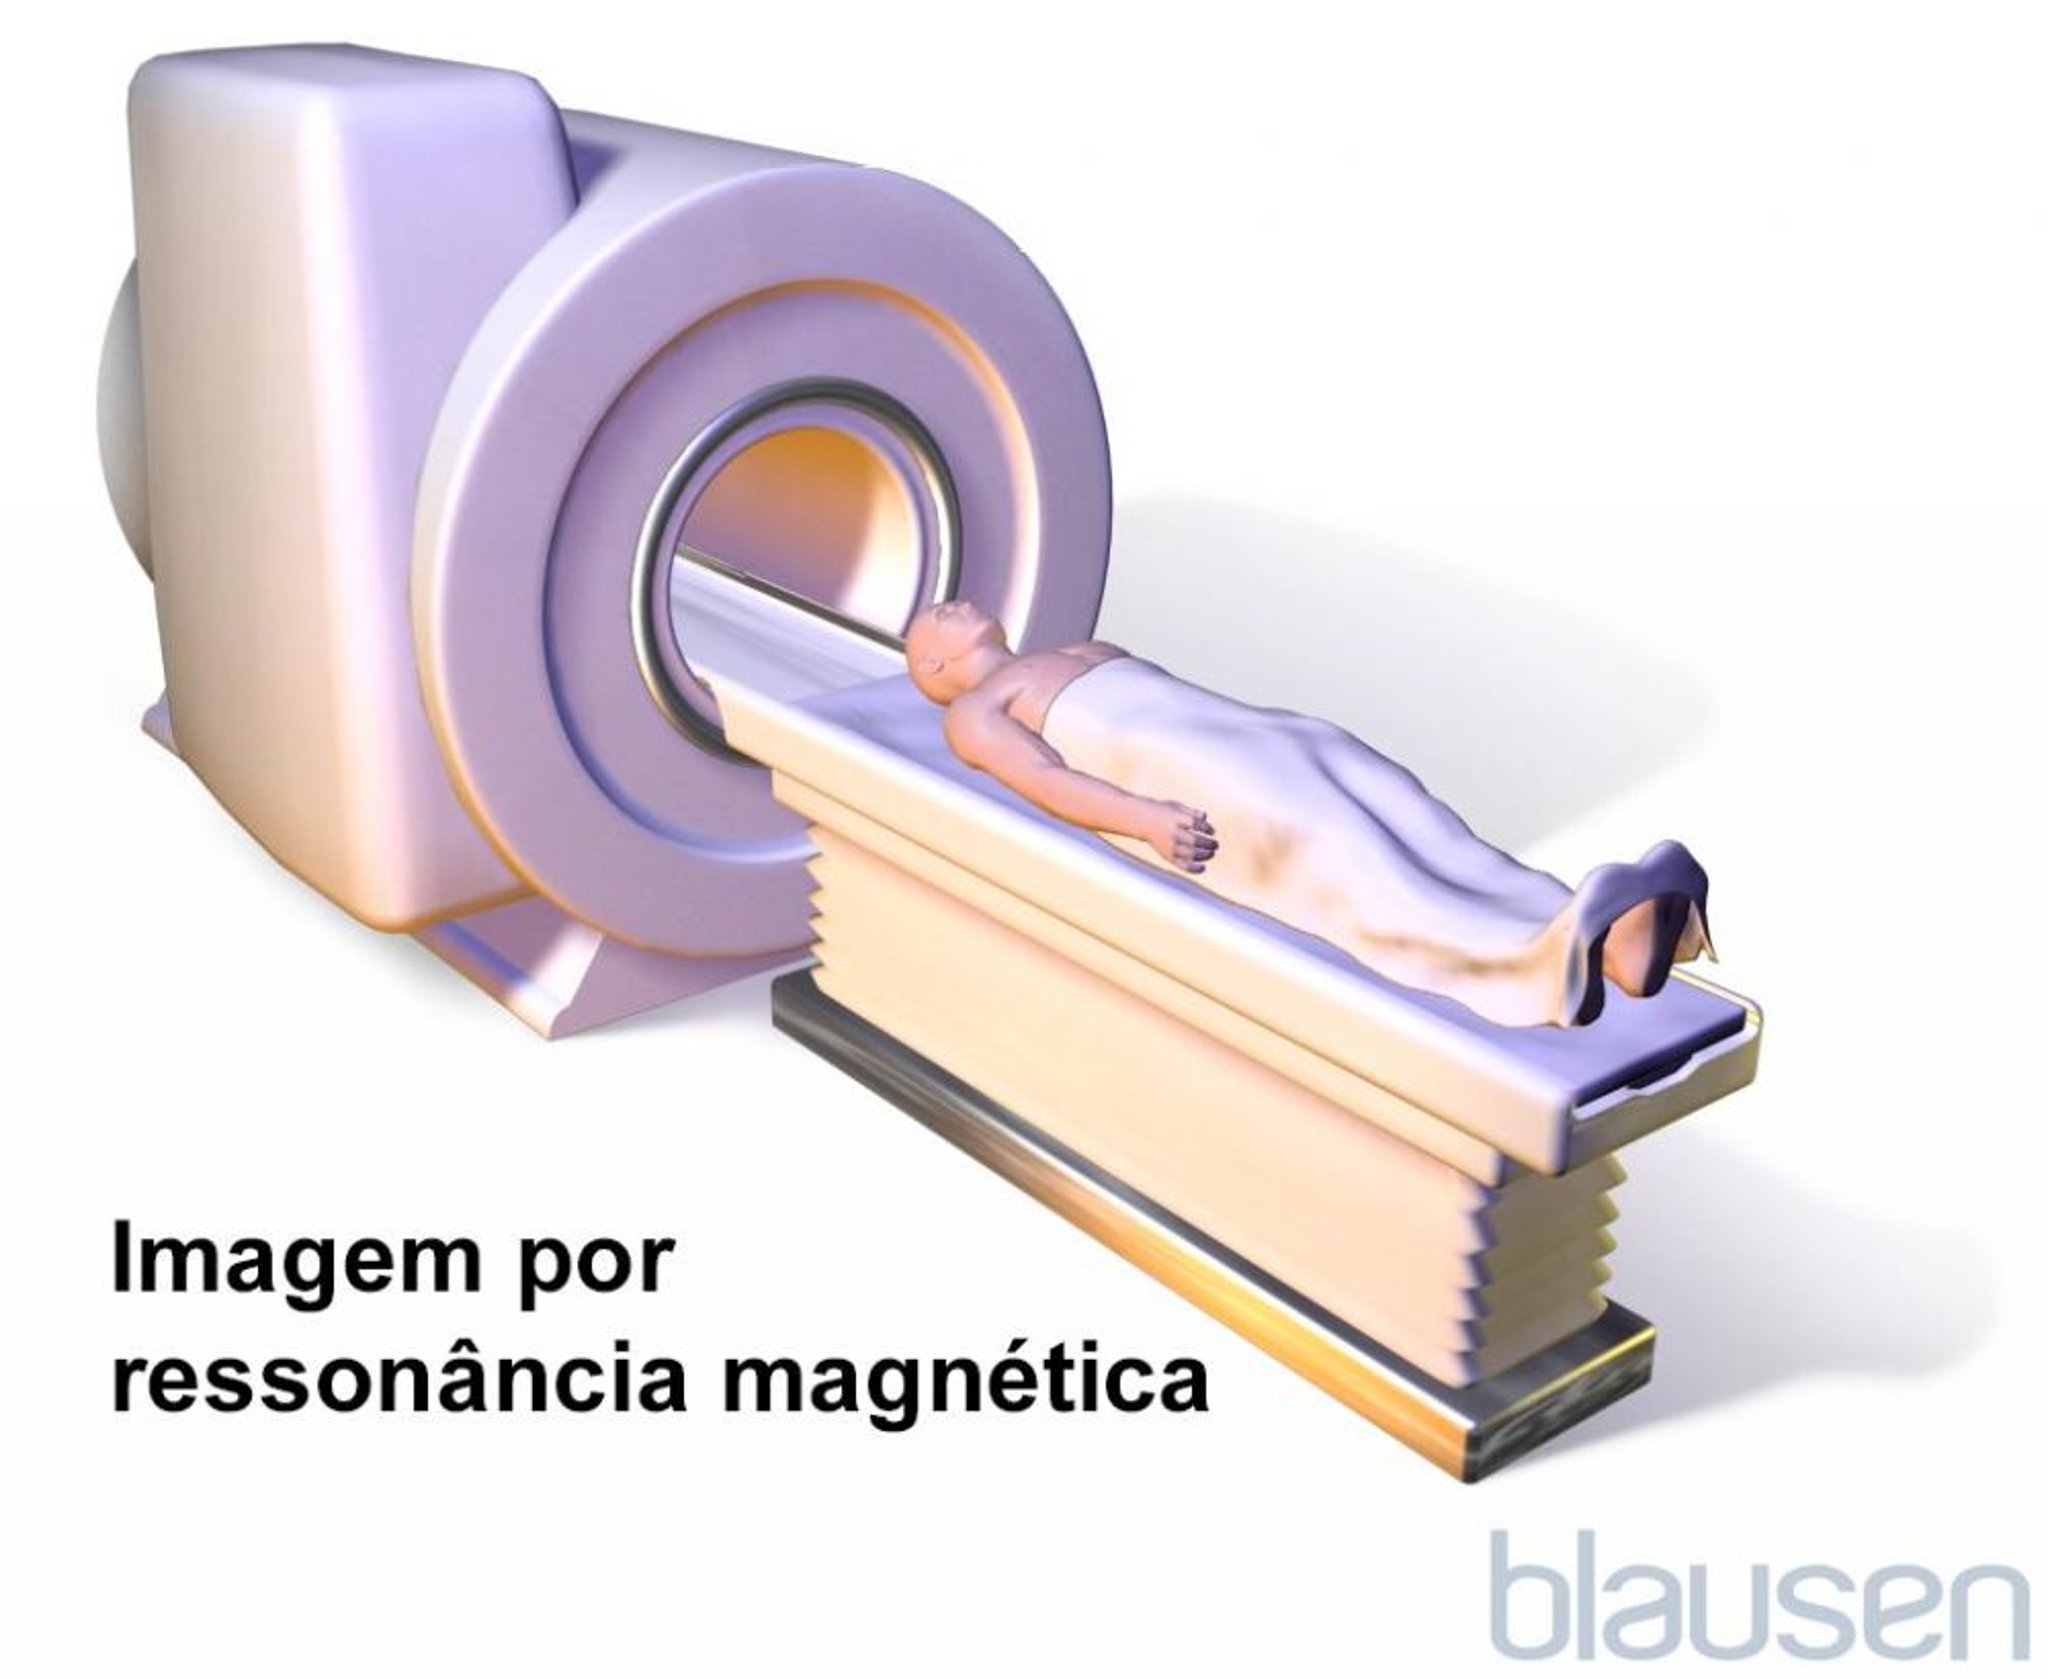 Ressonância magnética (RM)